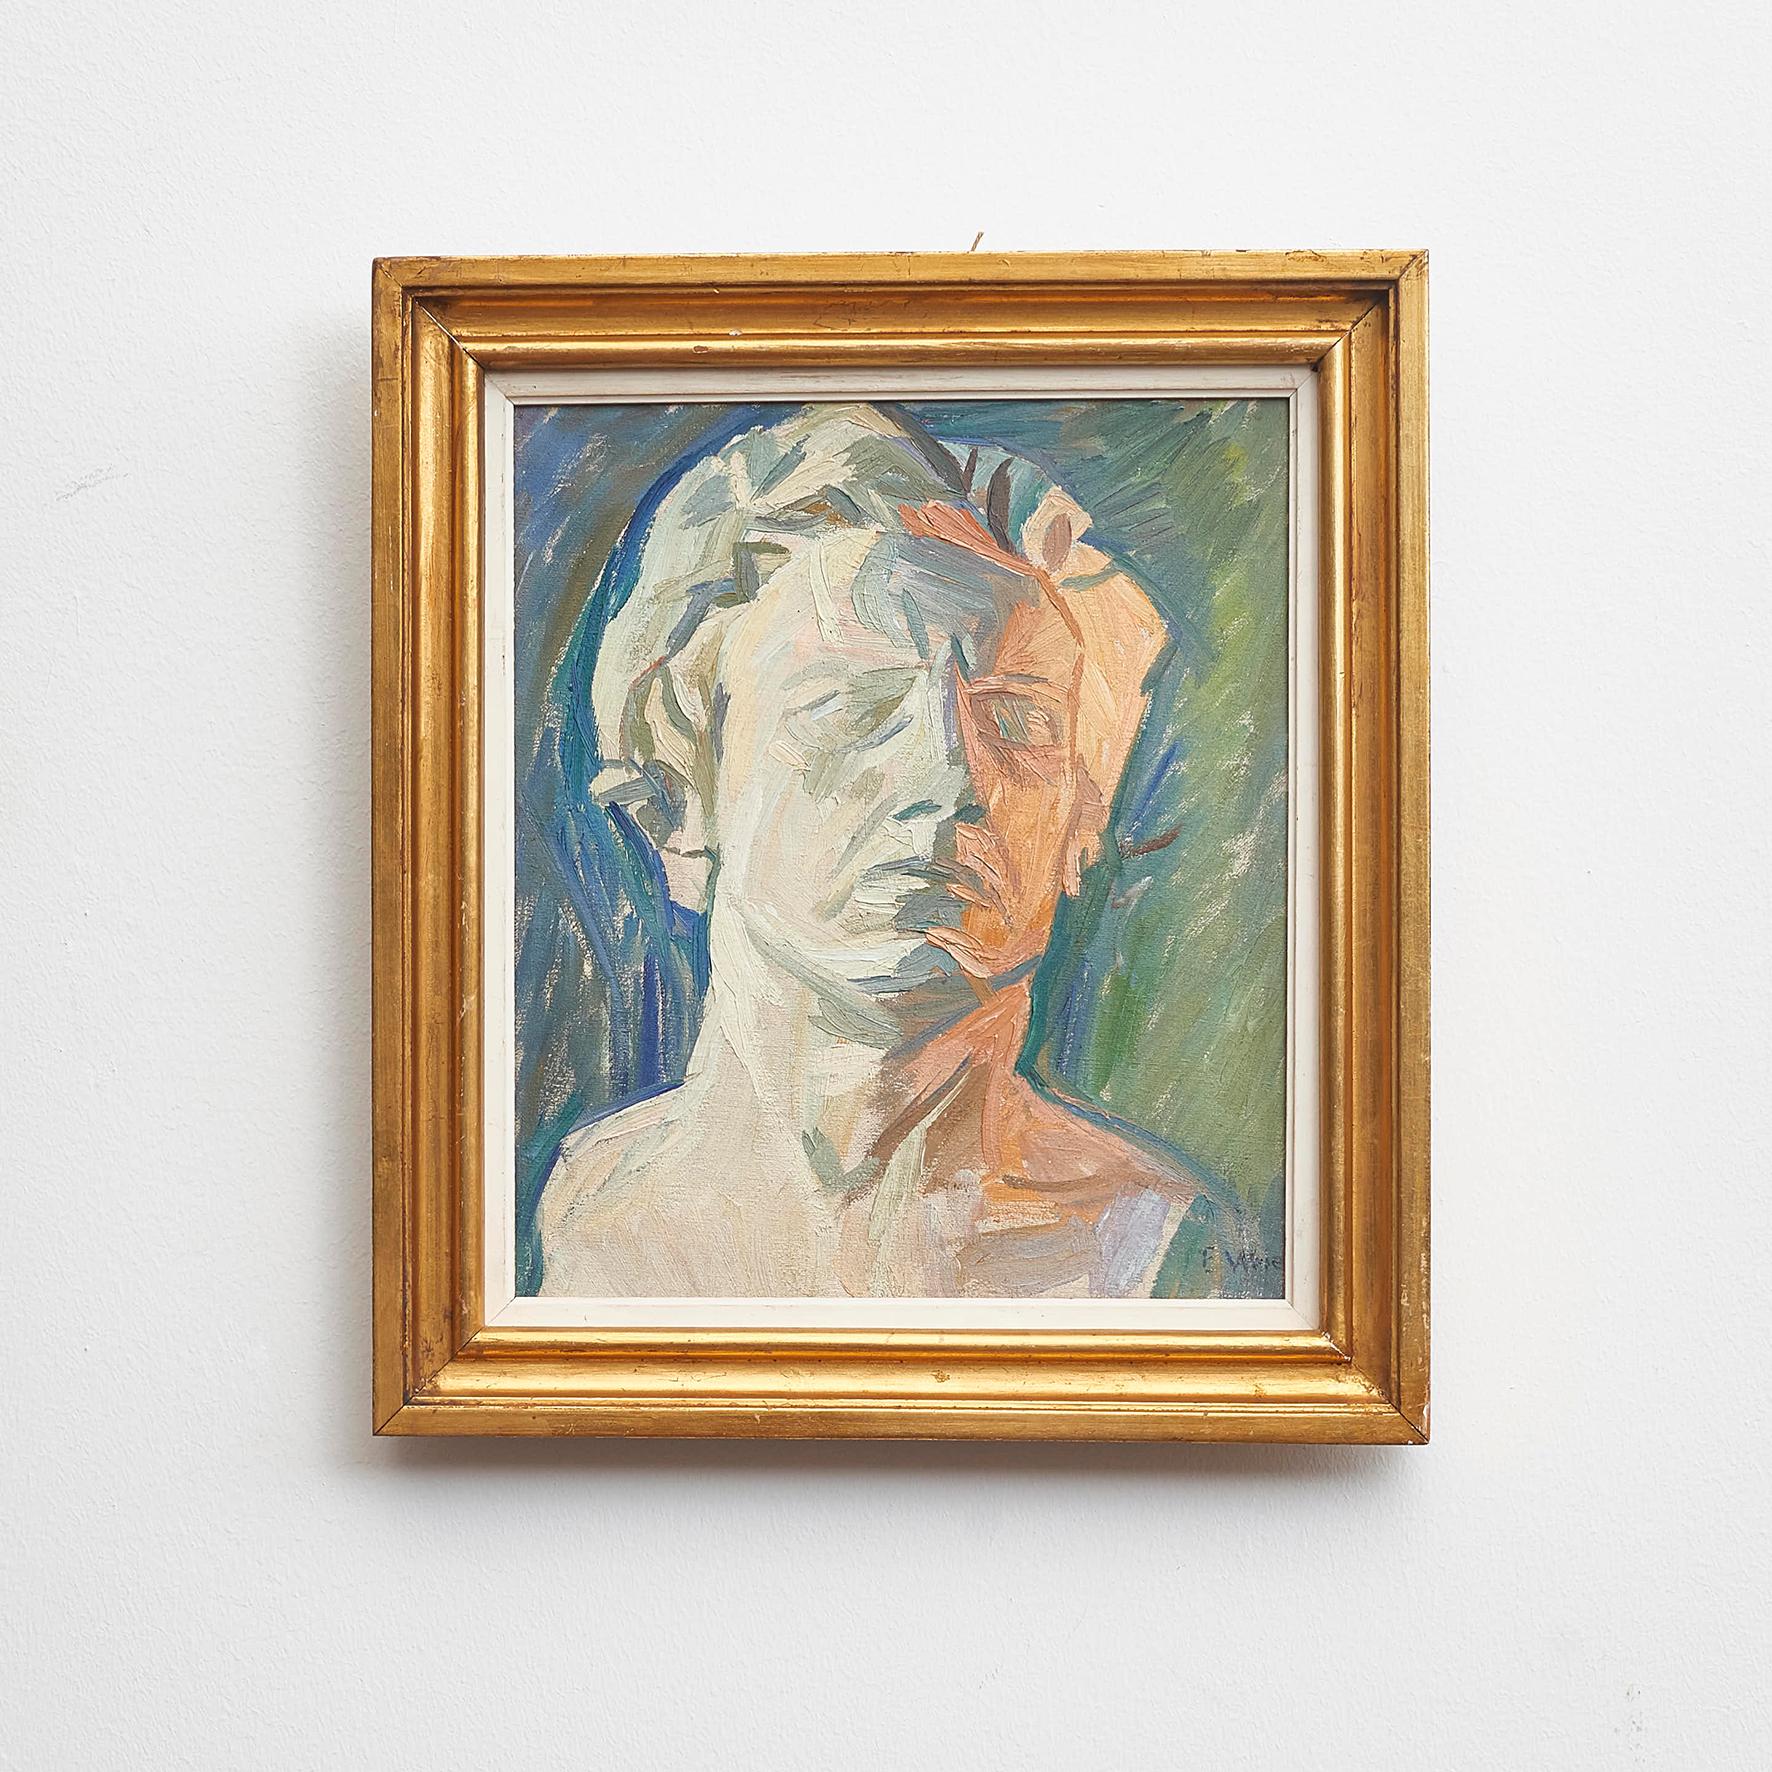 Das Bild ist nach einer Büste gemalt, die der Bildhauer Jens Lund anfertigte, als Weie sein Studio in der Amaliegade 23 bis zu seiner eigenen Ausstellung im Kunstverein im März 1915 auslieh.
Öl auf Leinwand. Signiert 'E. Weie